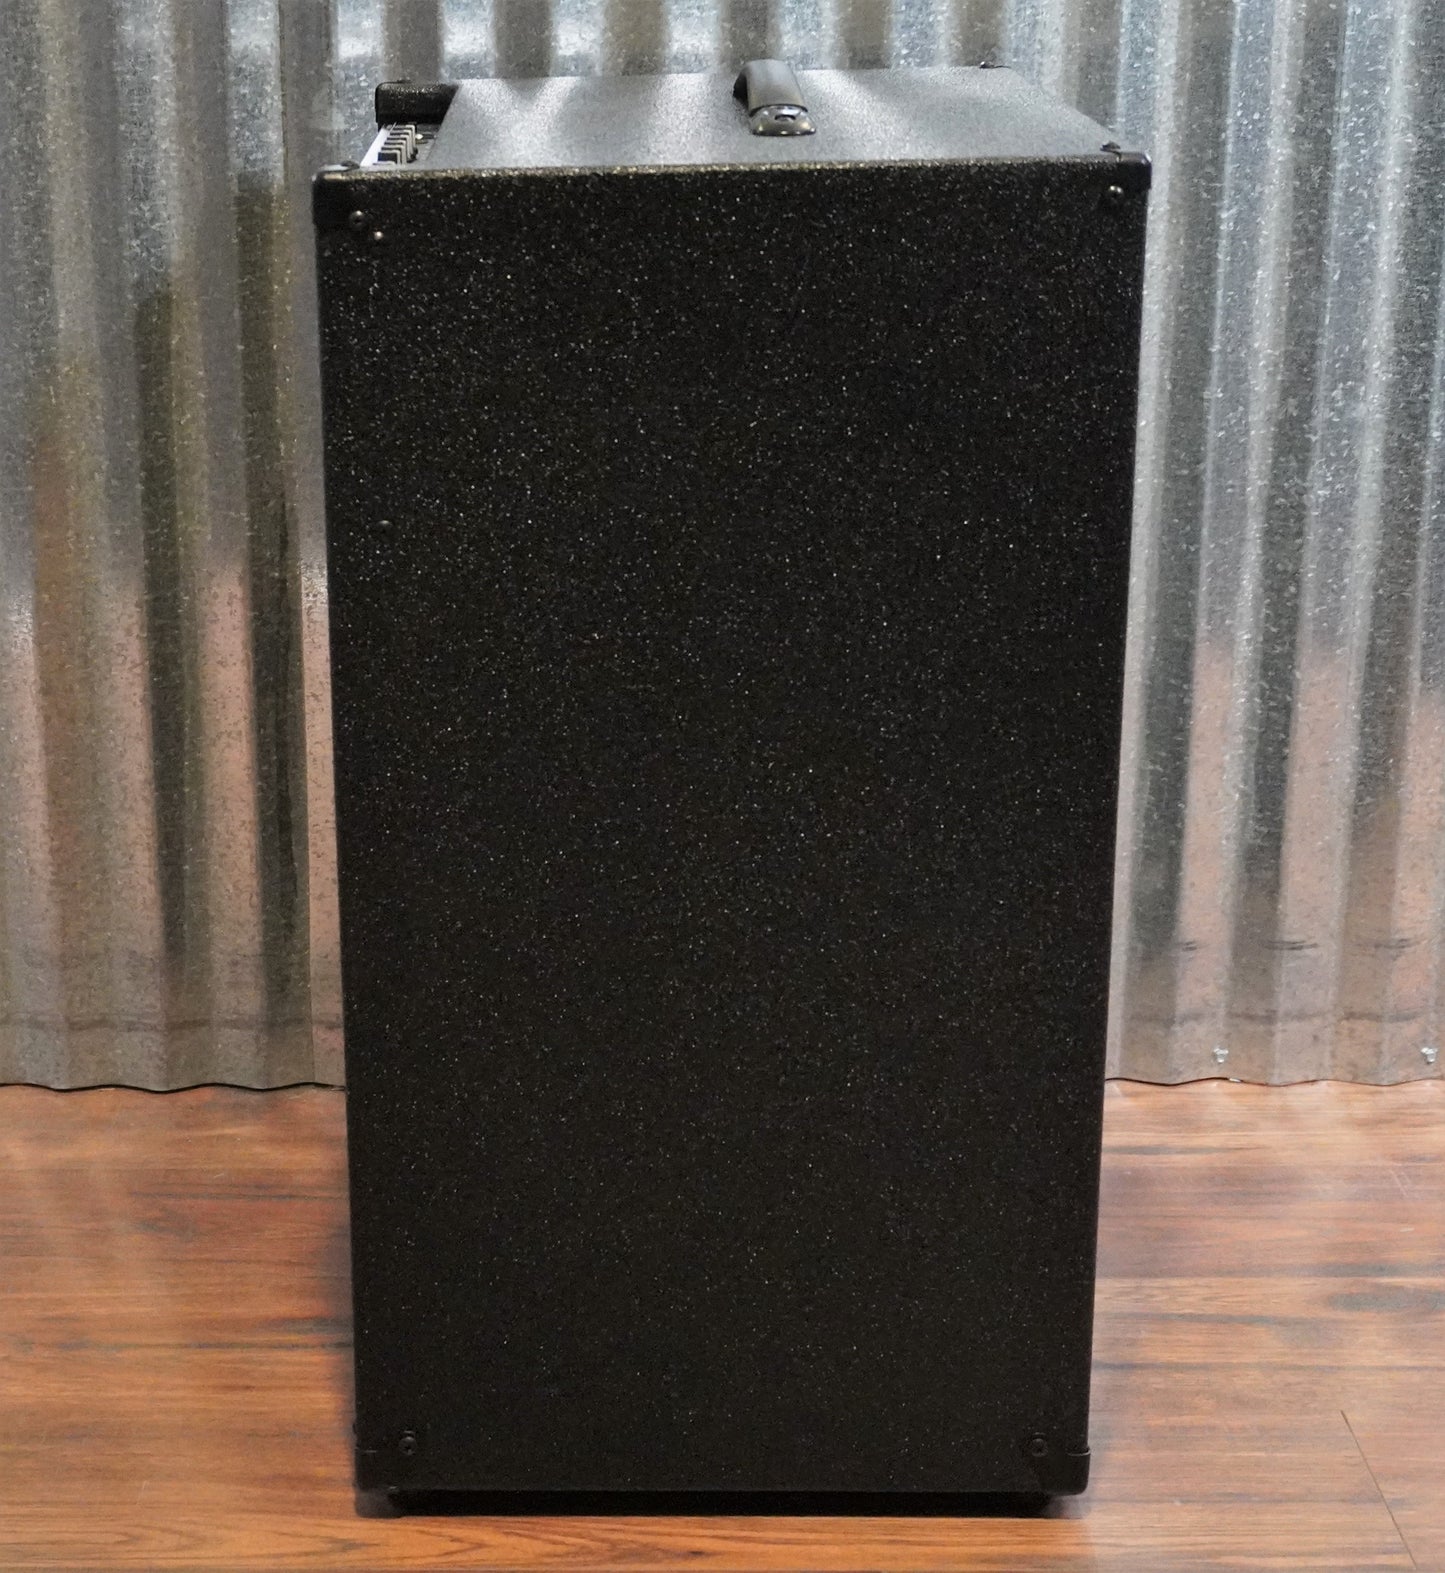 Gallien-Krueger GK MB 212-II 2x12" 500 Watt Ultra Light Bass Combo Amplifier